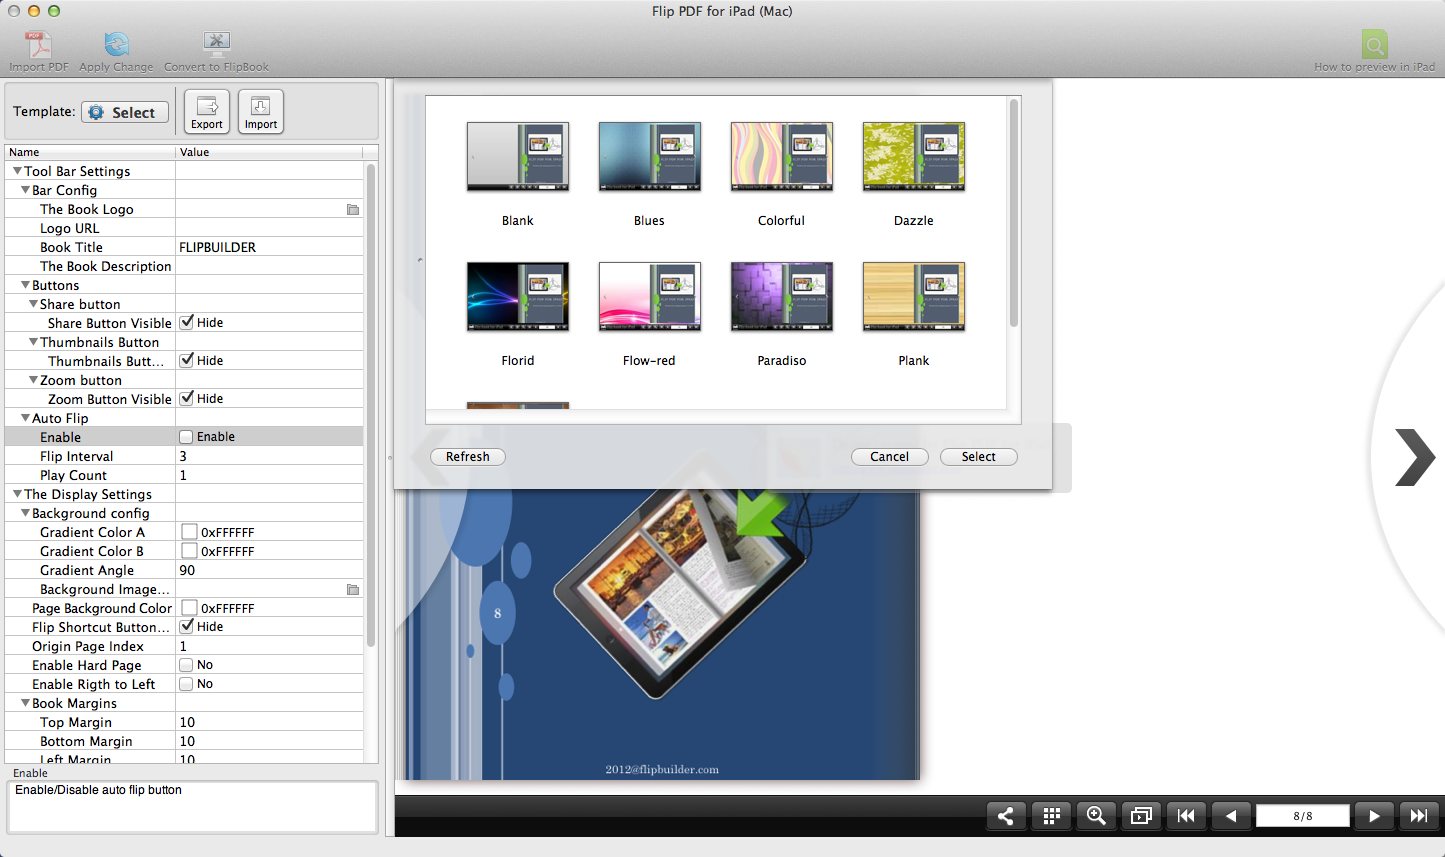 Flip PDF for iPad Mac 1.2 : Main window